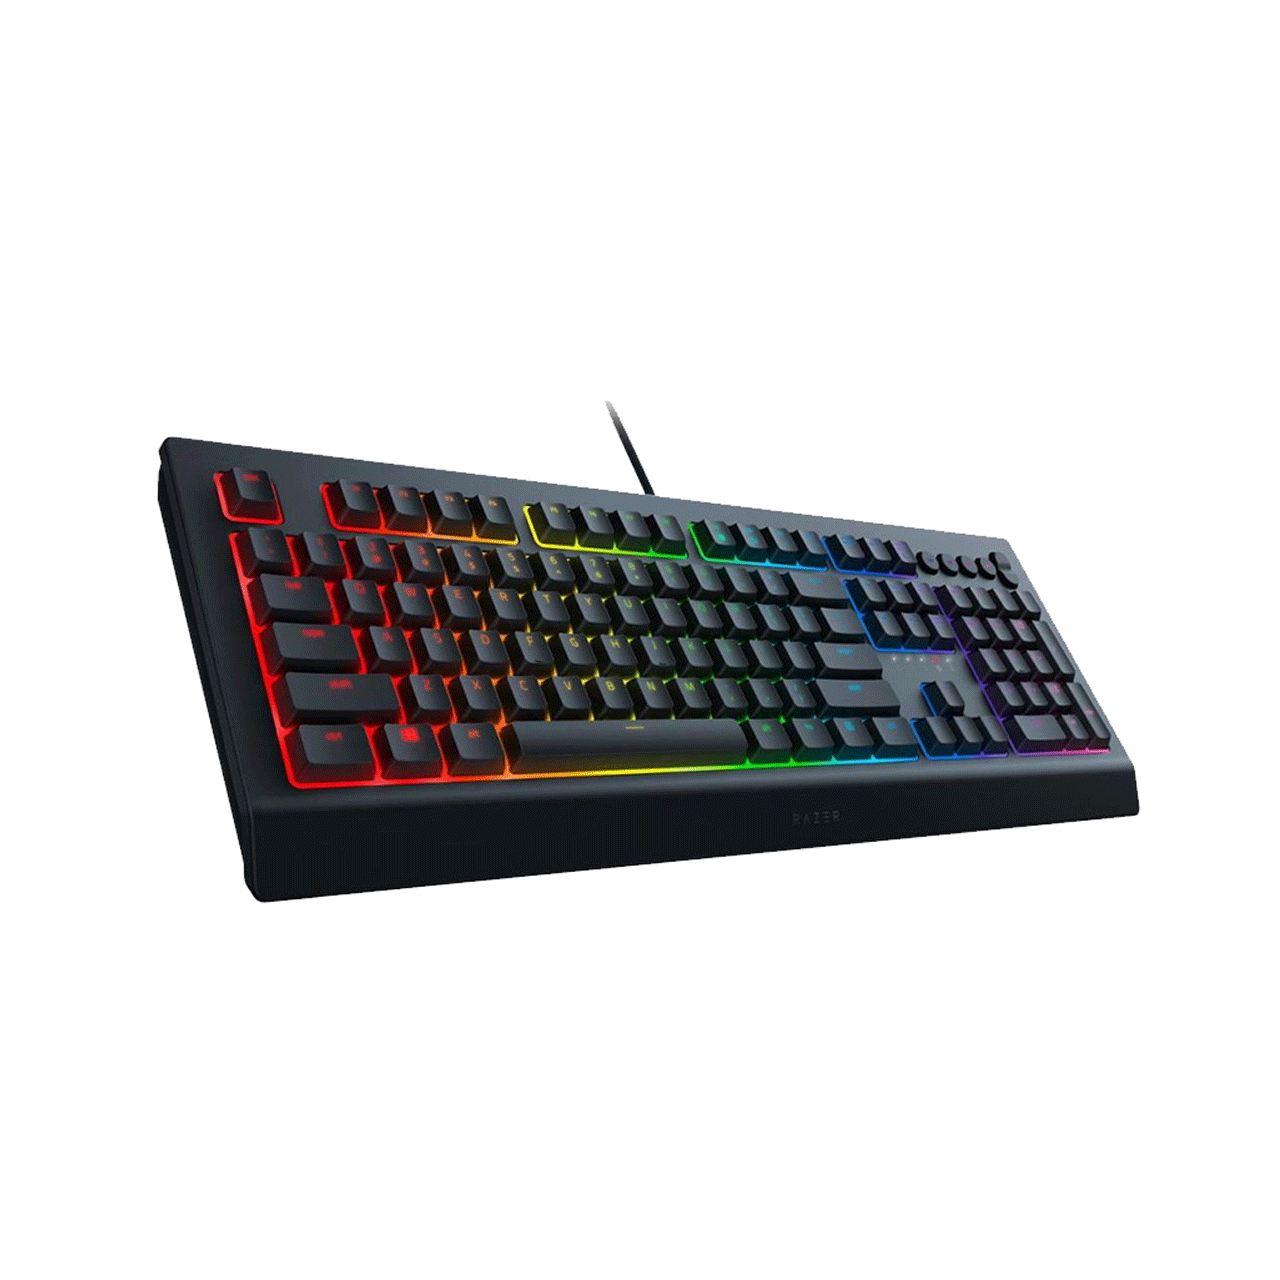 Razer--Cynosa-V2-Wired-RGB-Gaming-Keyboard